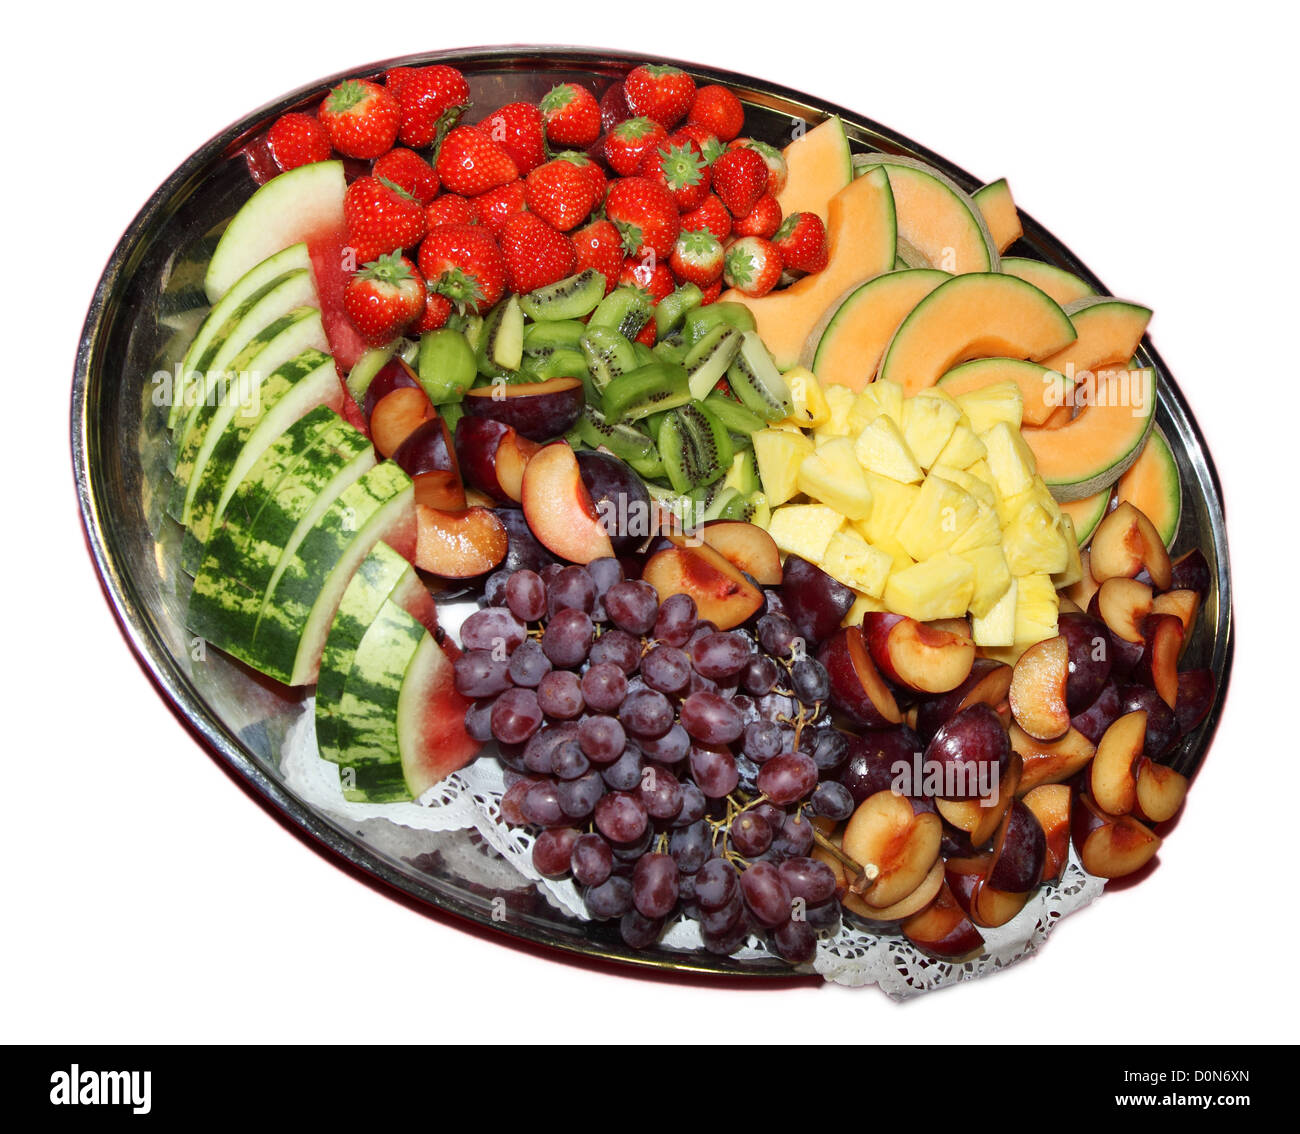 Platte mit frischen Früchten serviert, Teilnehmer an einem event Stockfoto